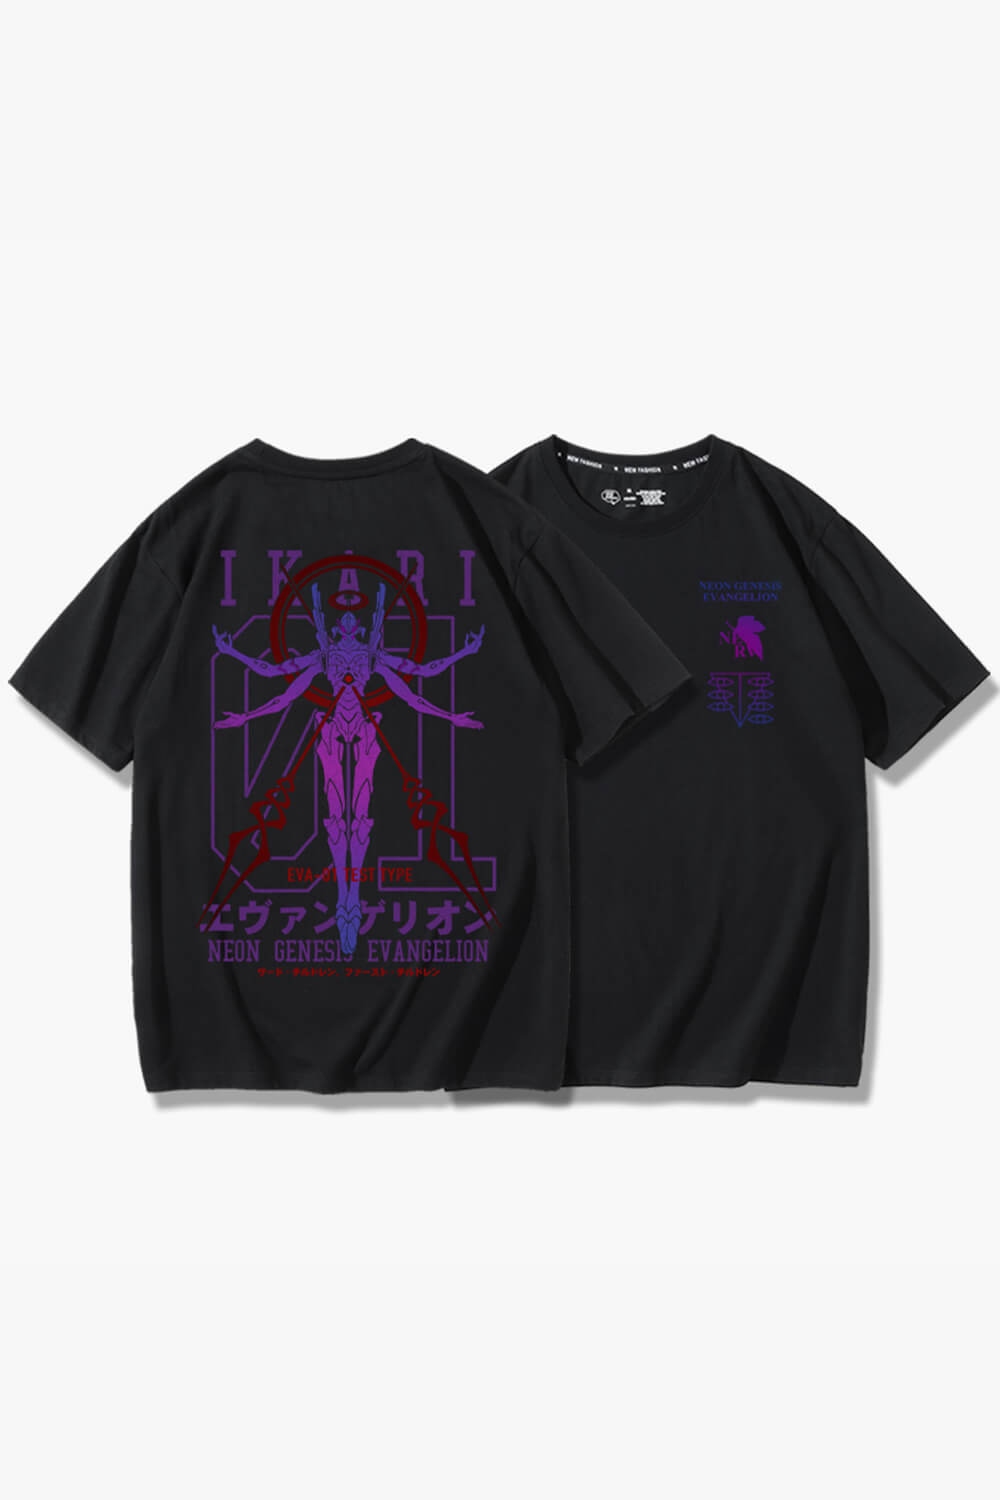 Ikari Evangelion Neon Genesis T-Shirt